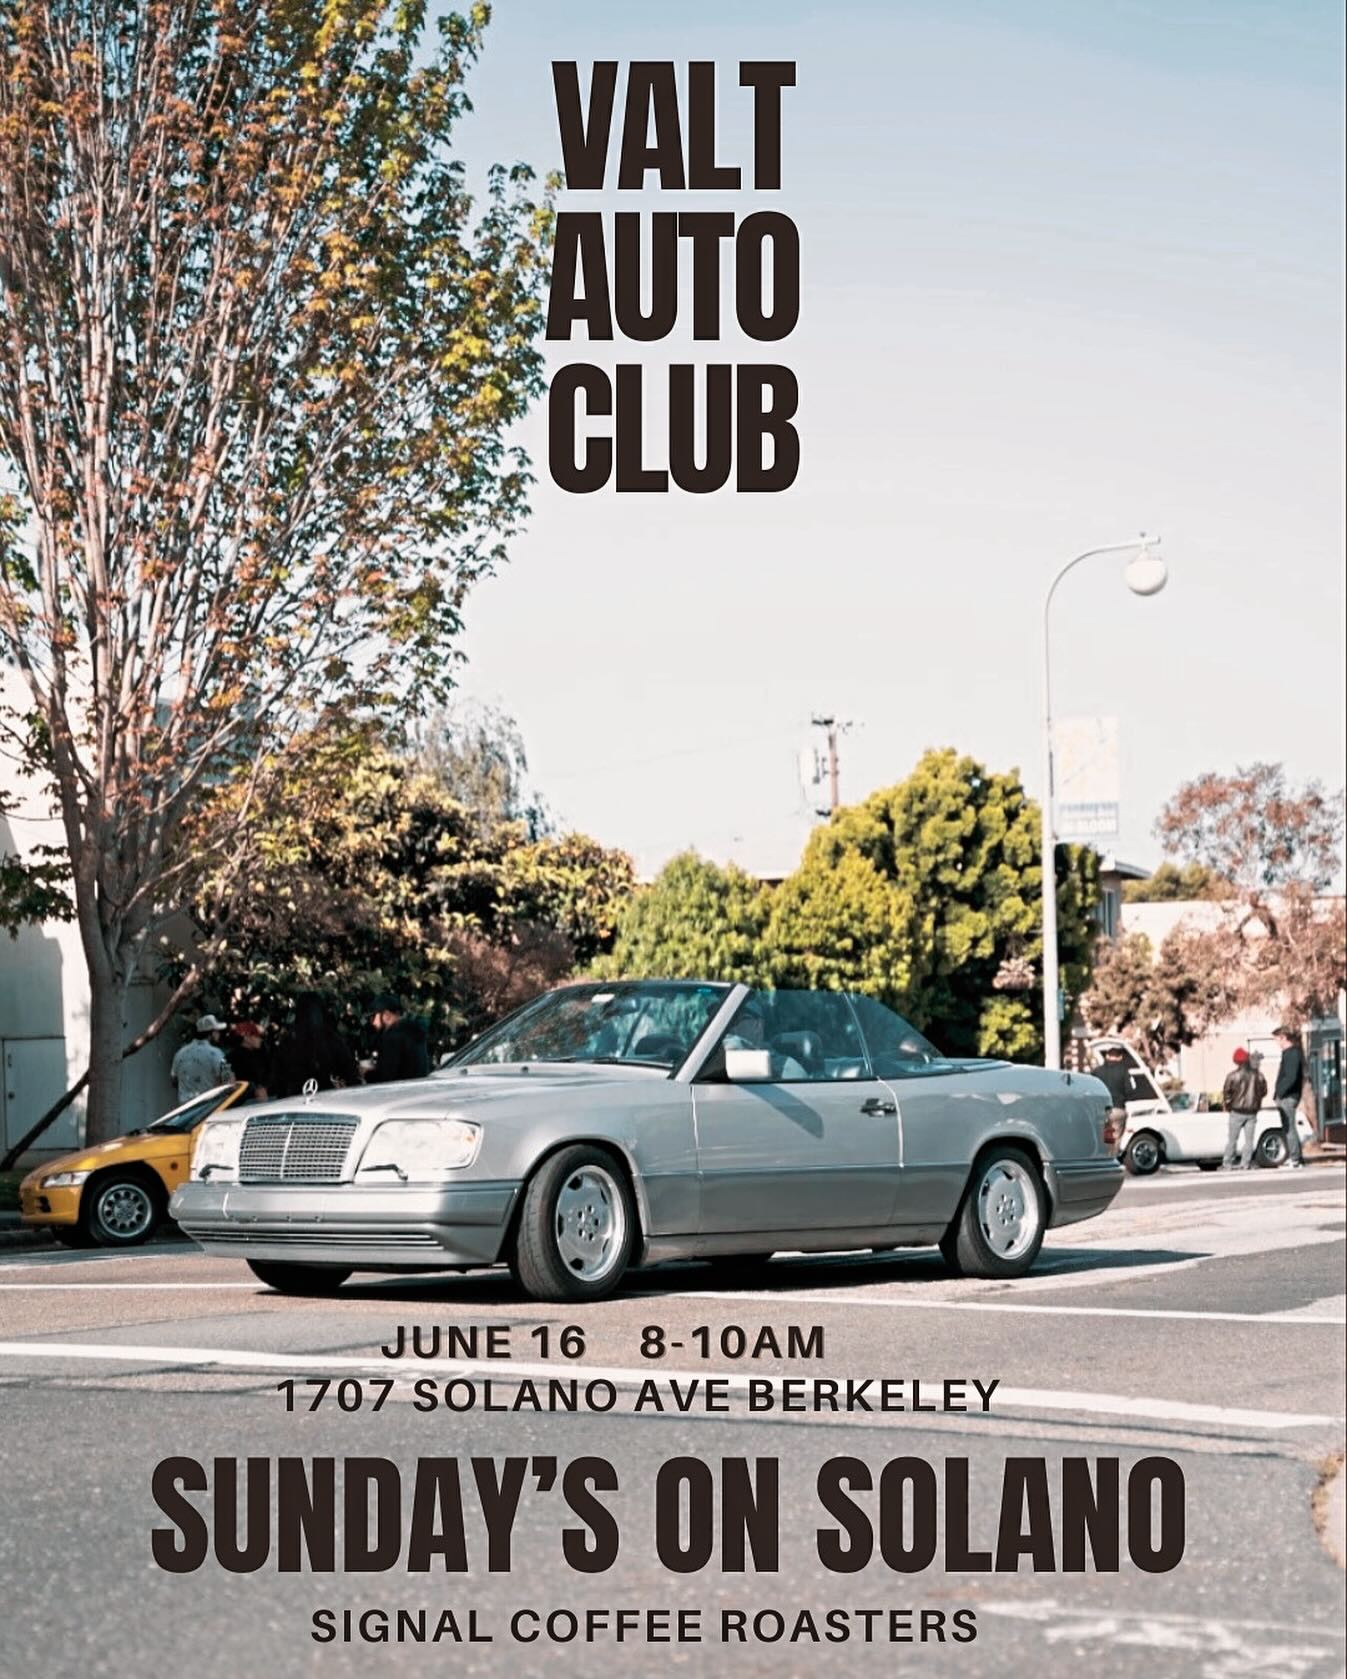 Sundays on Solano